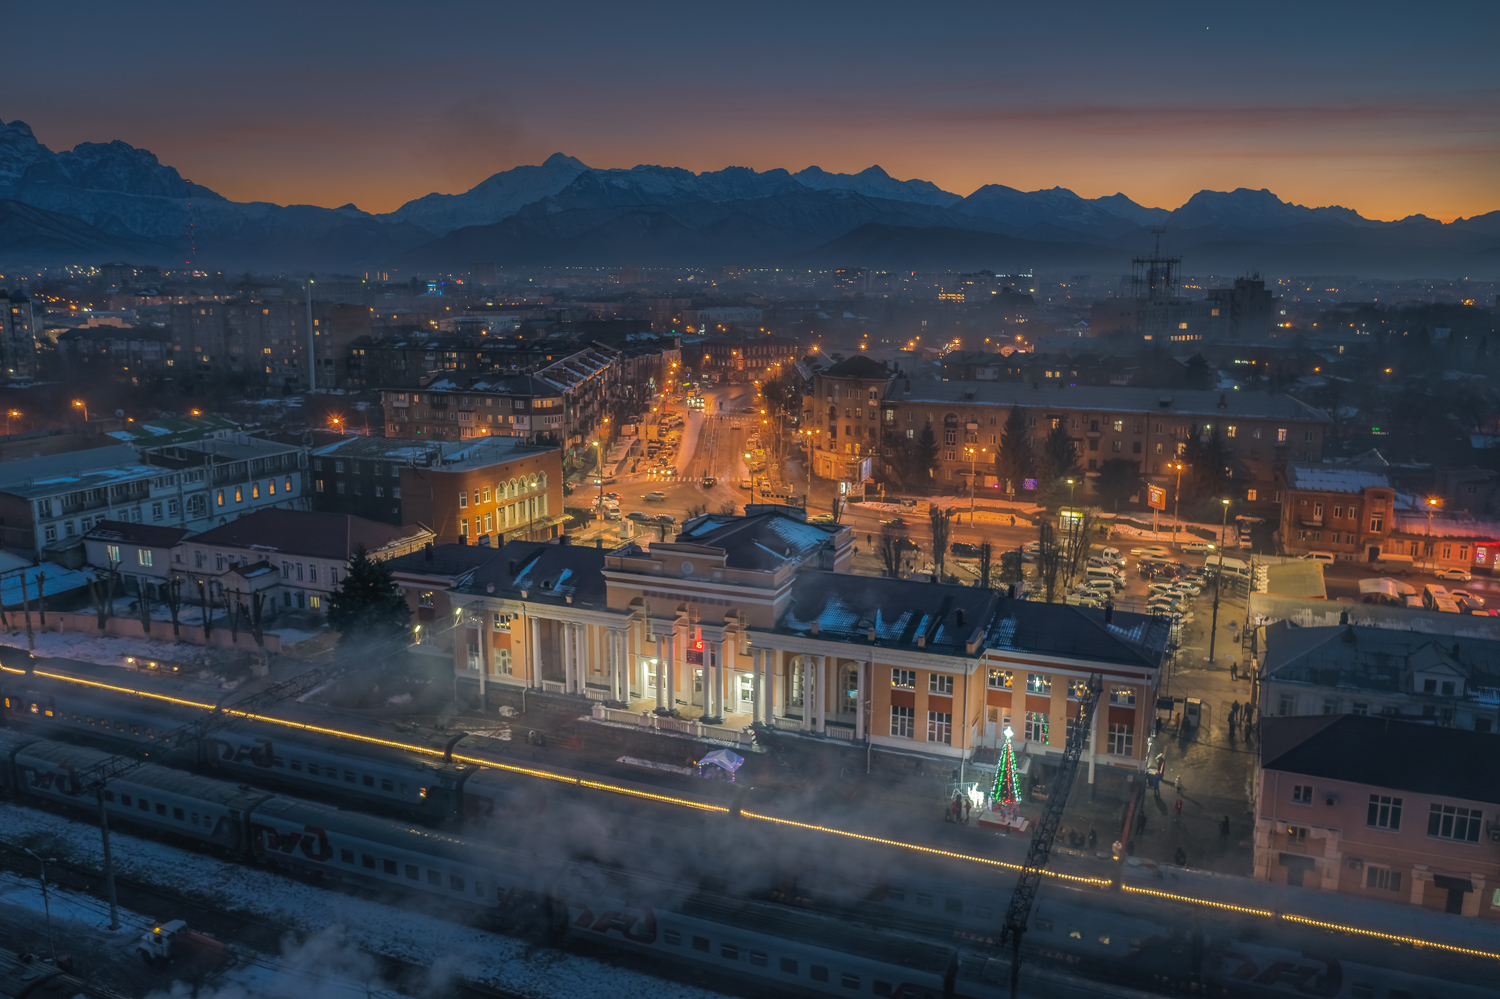 Sjevernokavkaska željeznica — Stations & ways